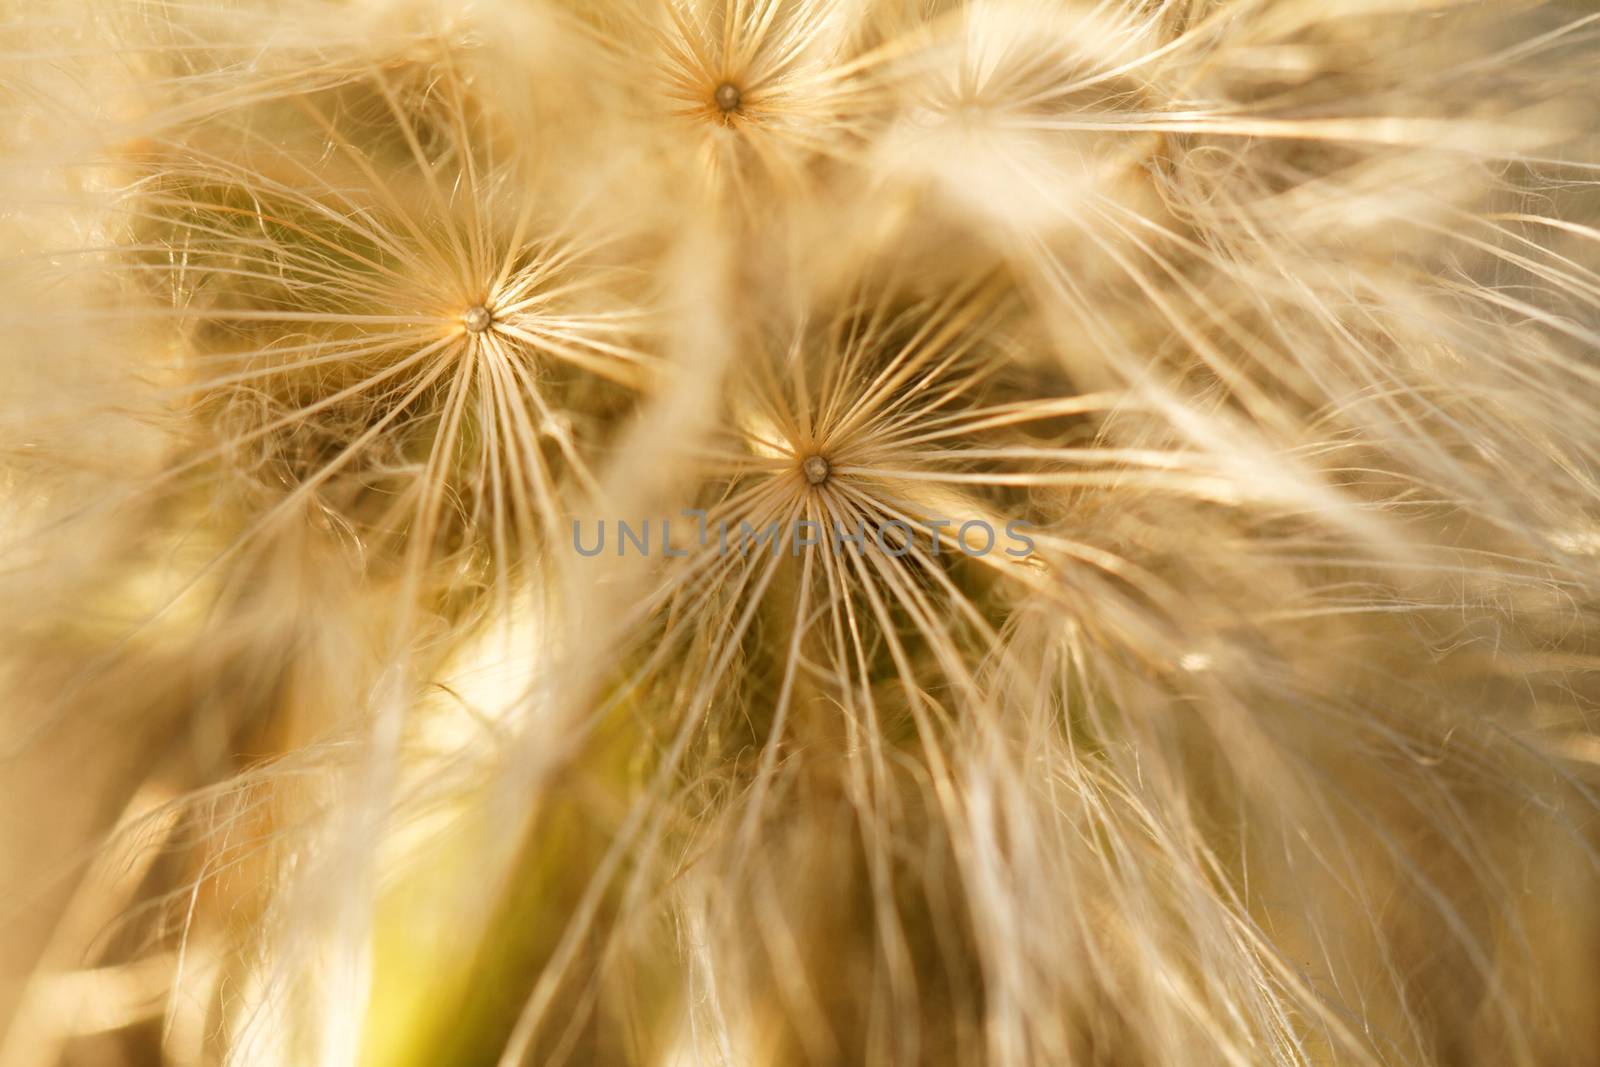 Dandelion seeds by Nneirda